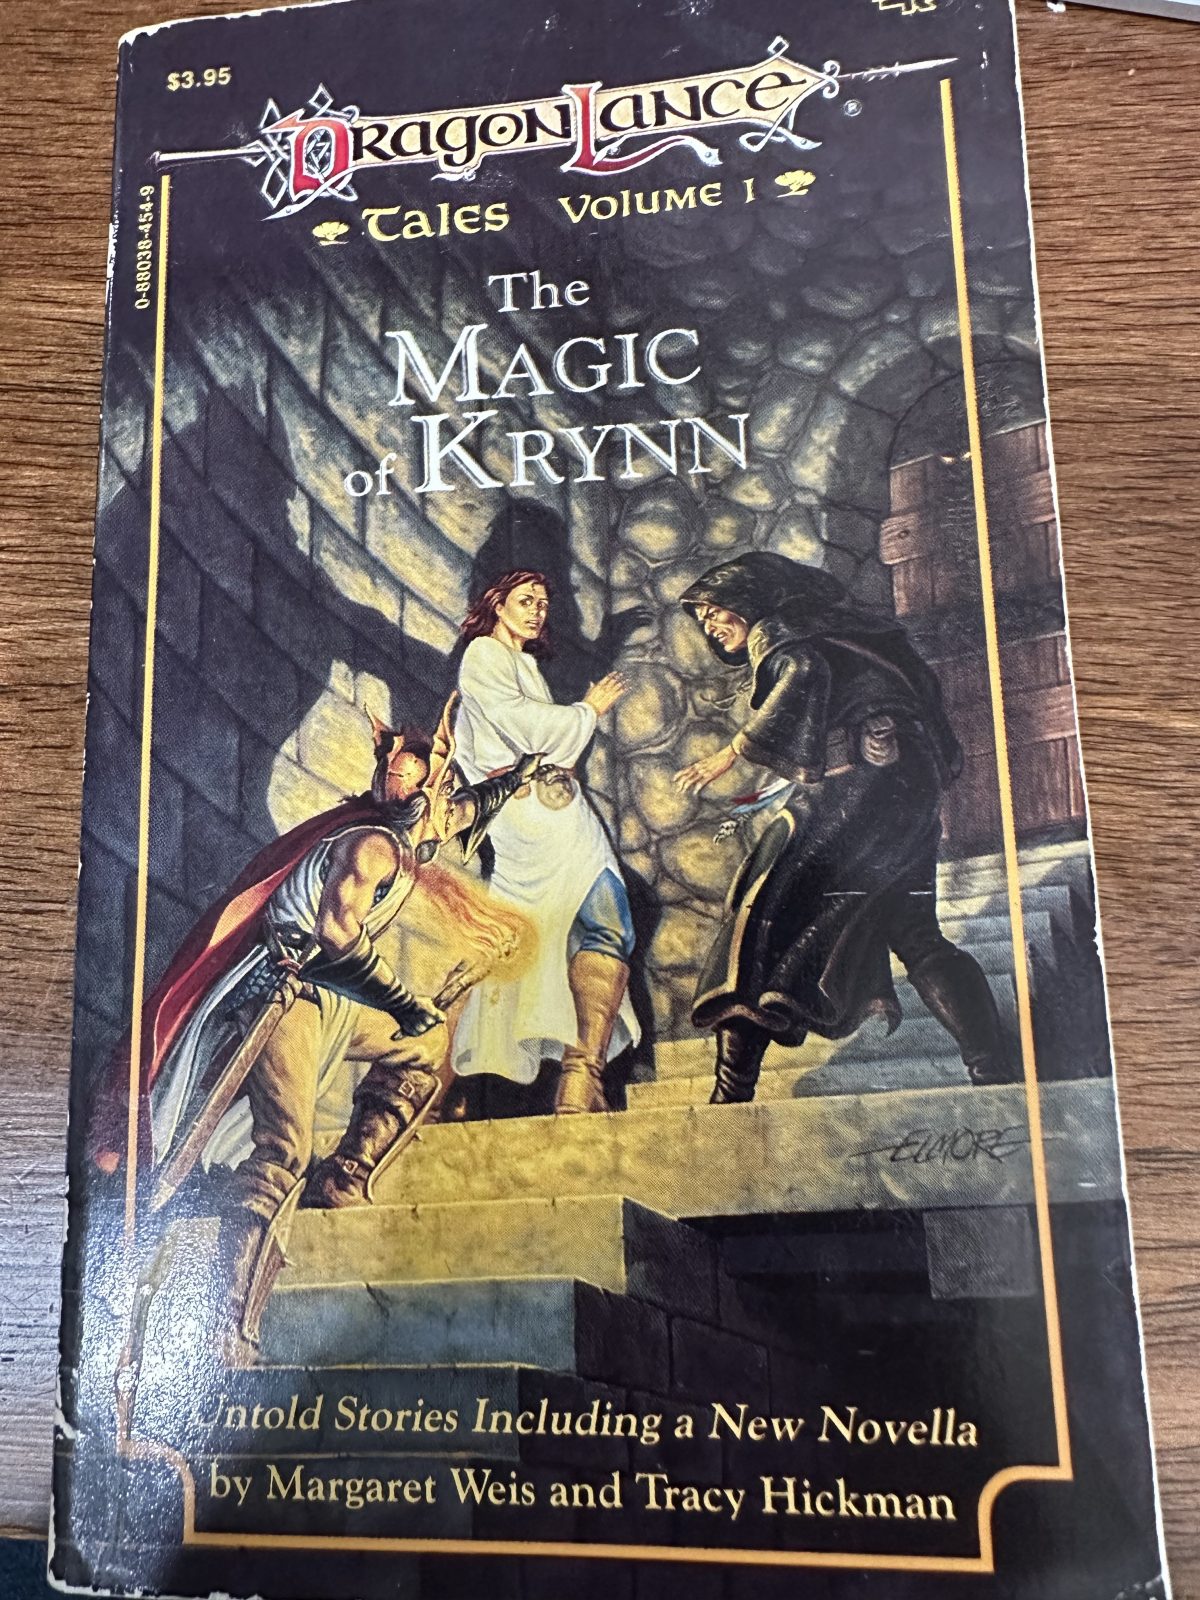 DragonLance Tales Volume 1: The Magic of Krynn